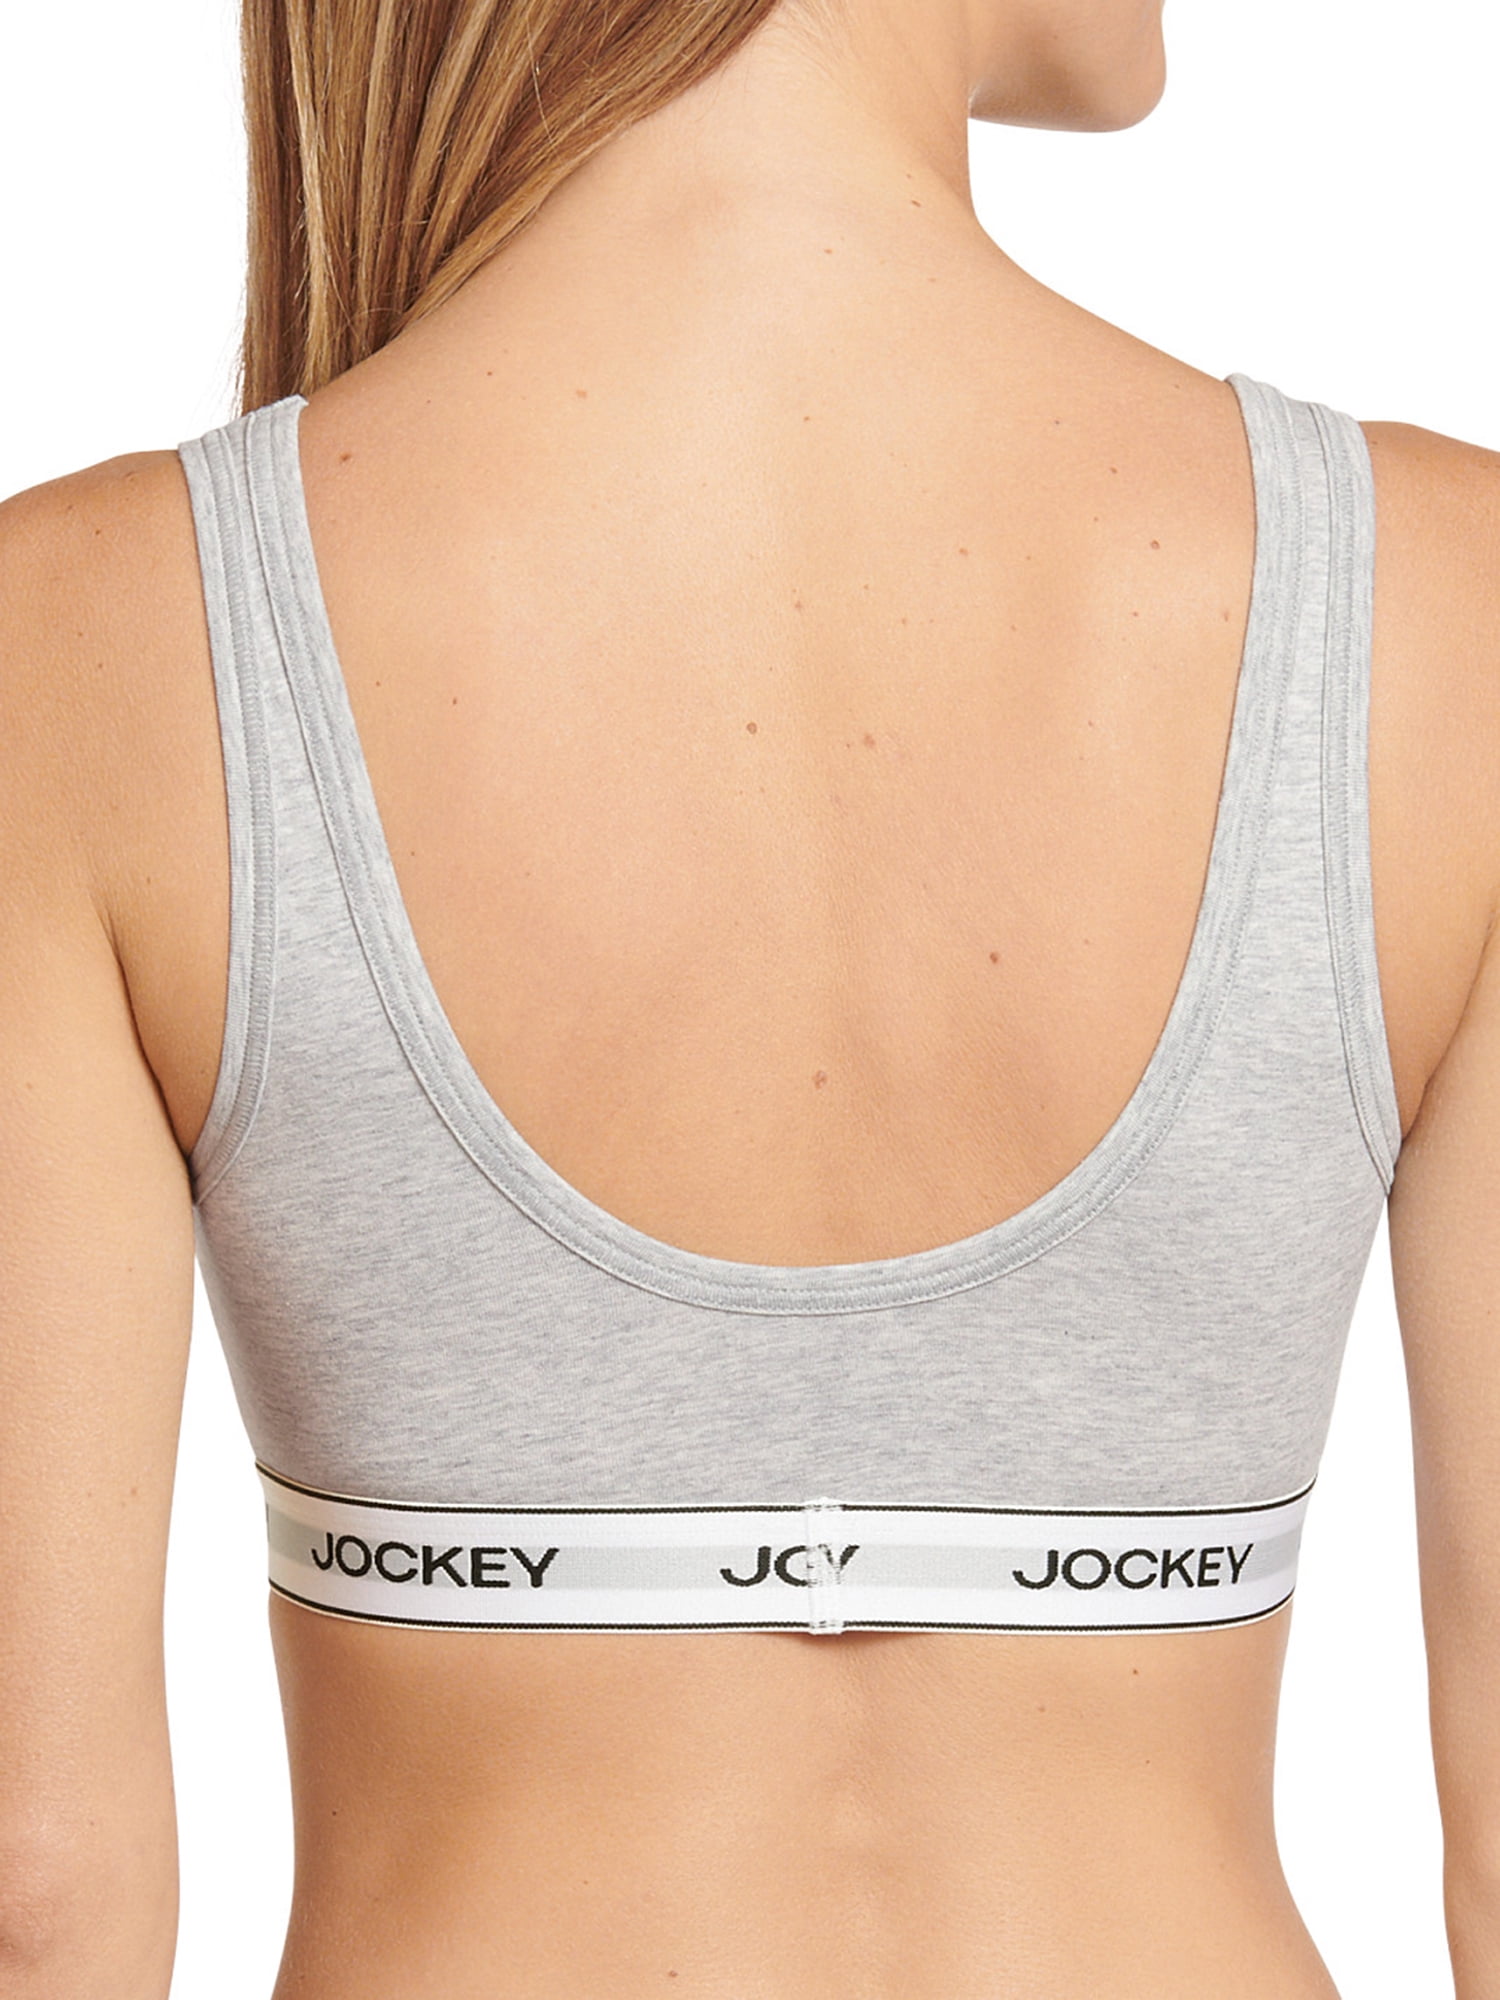 Jockey® Essentials Women's Cotton Stretch Scoop Bralette, Wirefree Comfort  Bra, Sizes Small-3XL, 5691